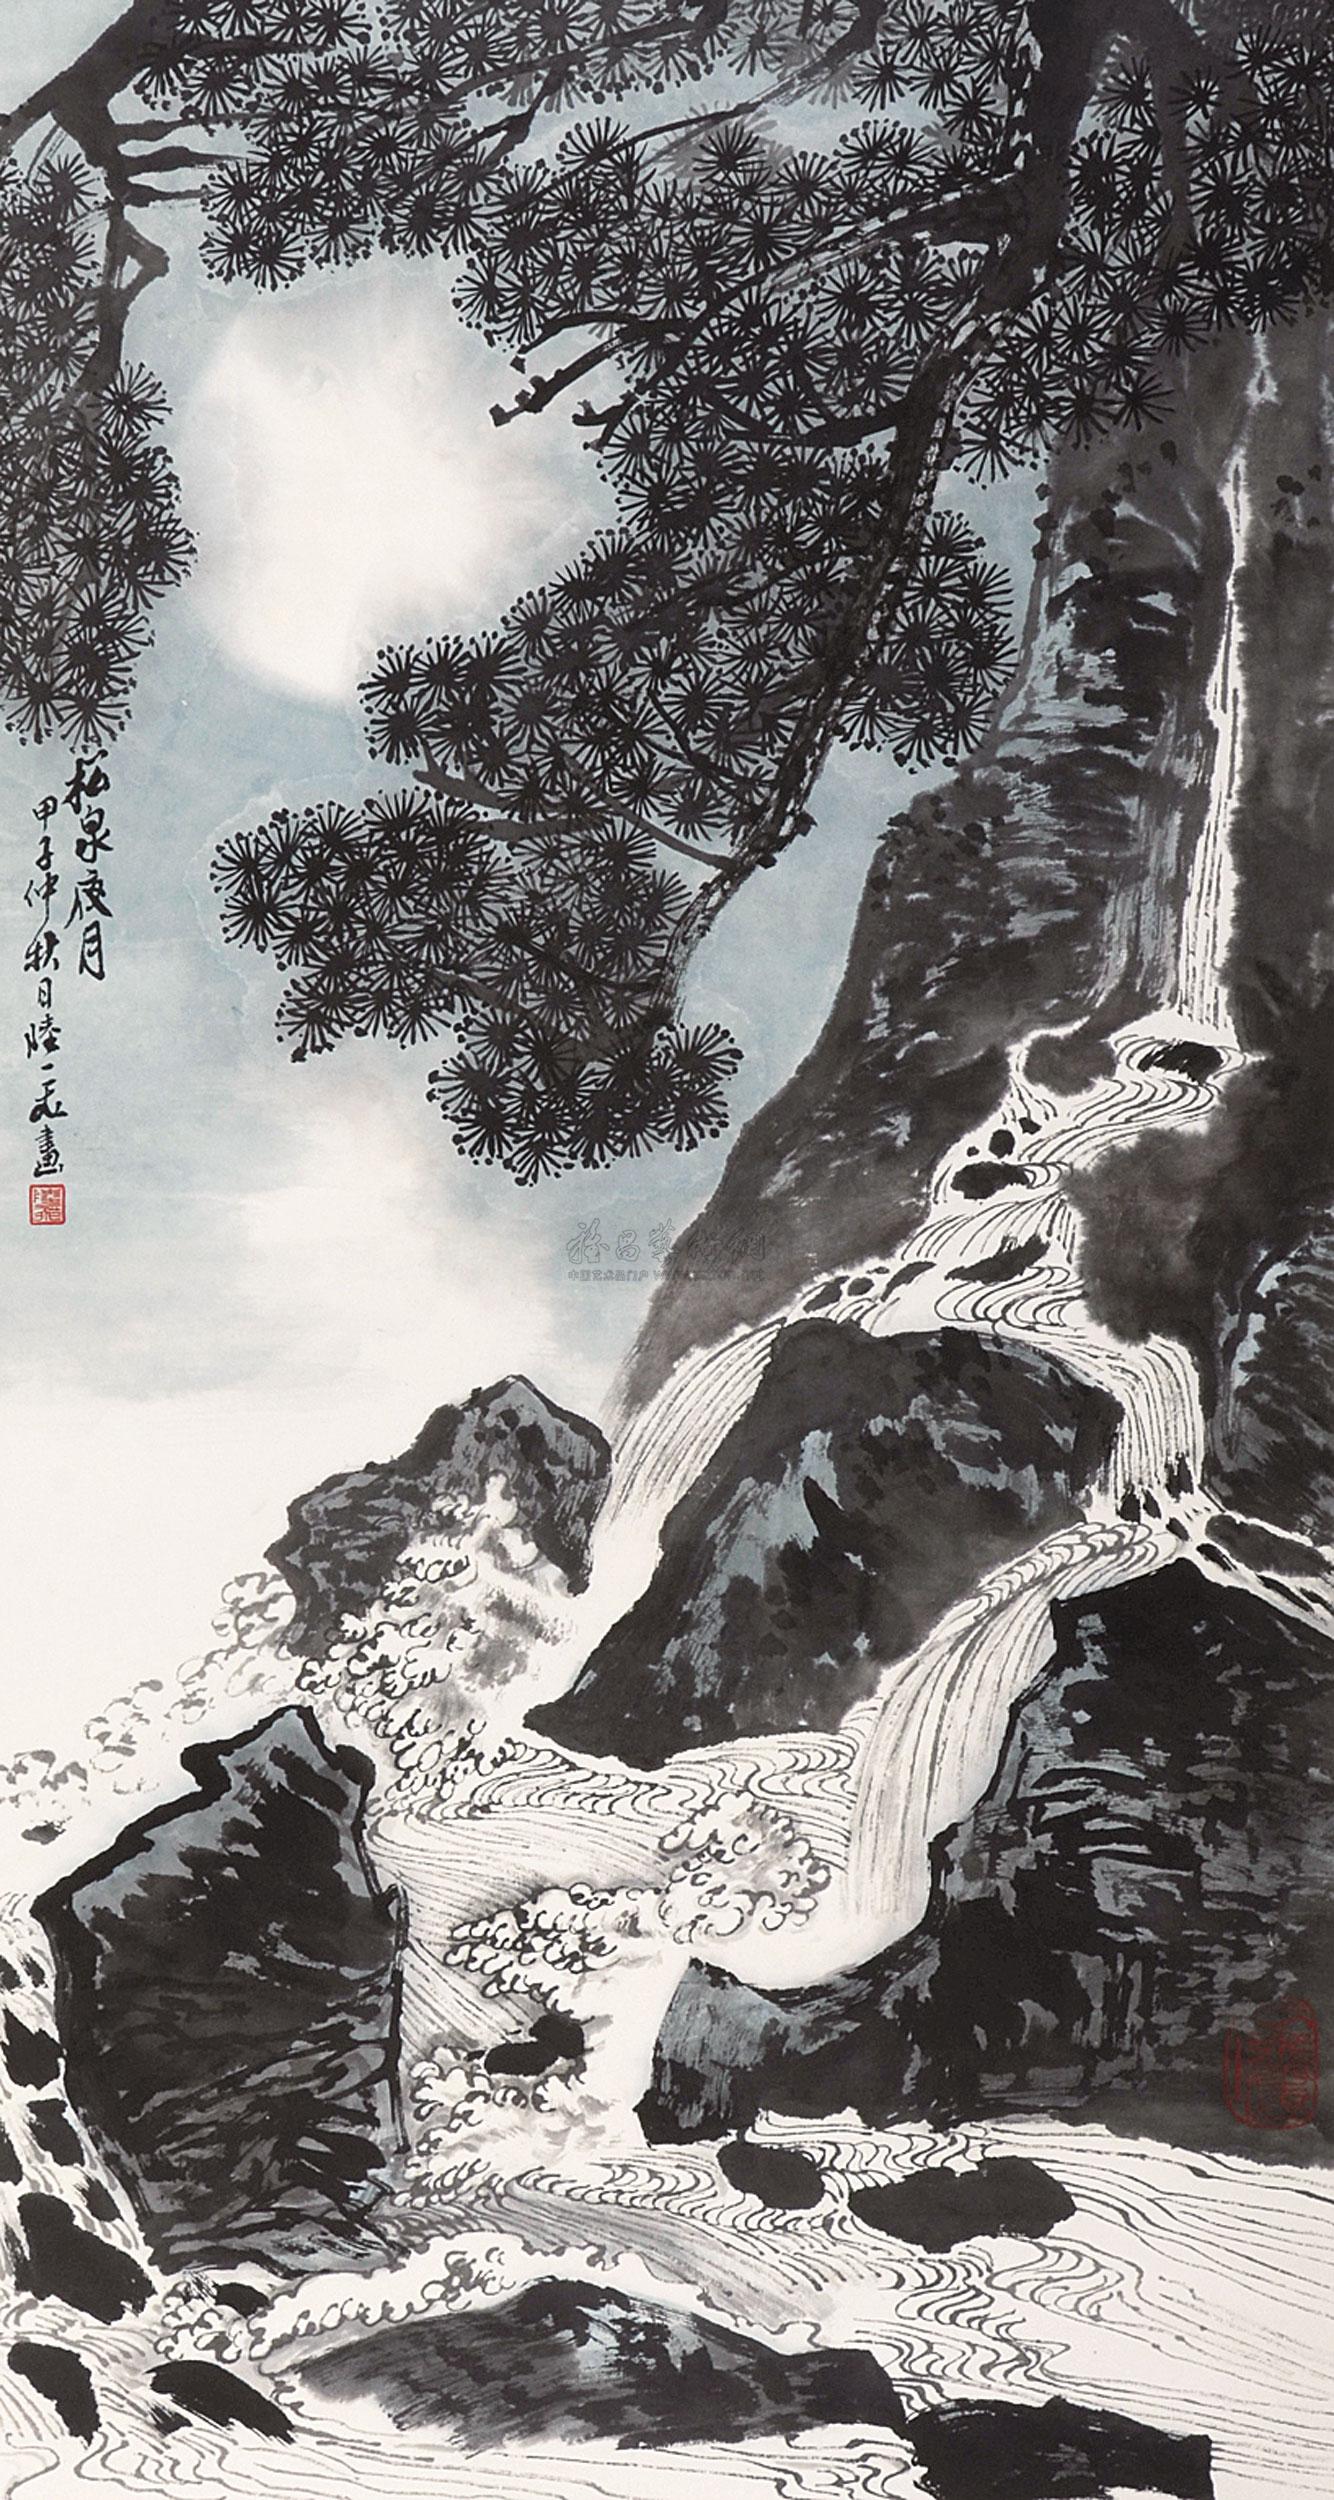 松泉瀑布国画图片